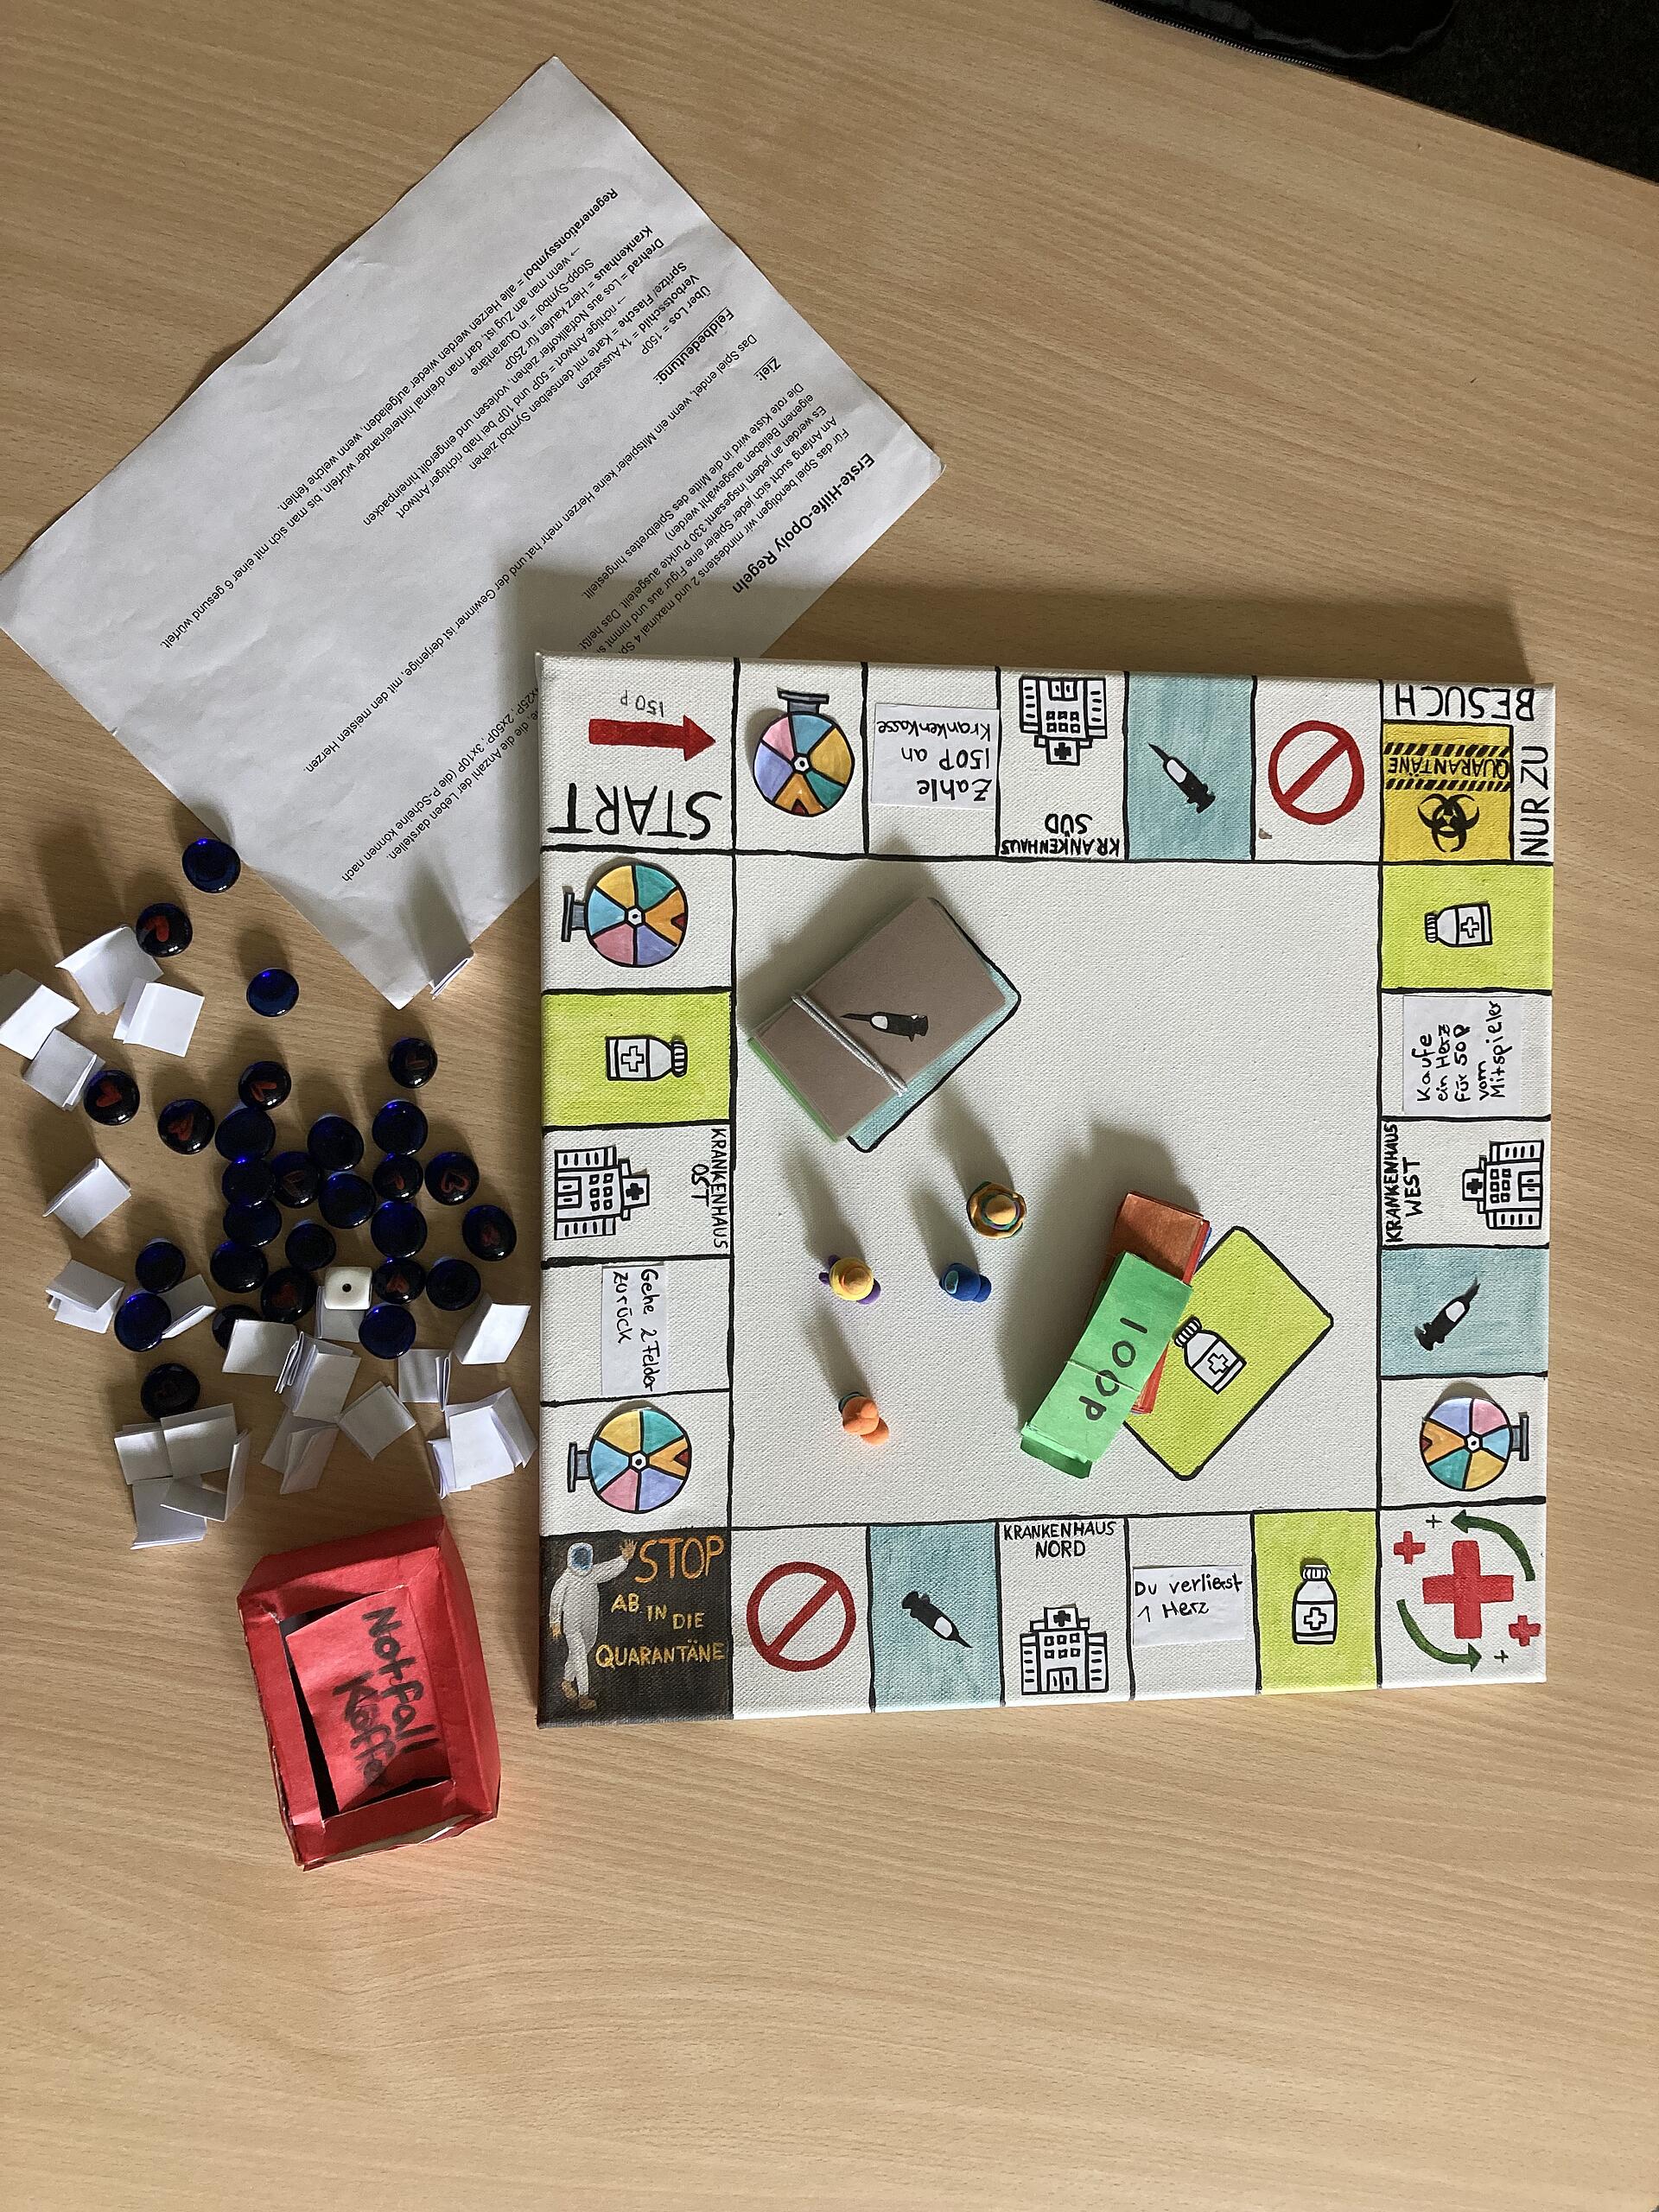 Ein selbstgebasteltes Monopoly-Spielbrett mit Spielfiguren, Aktionskarten einem Erste-Hilfe-Koffer und einer Spielanleitung